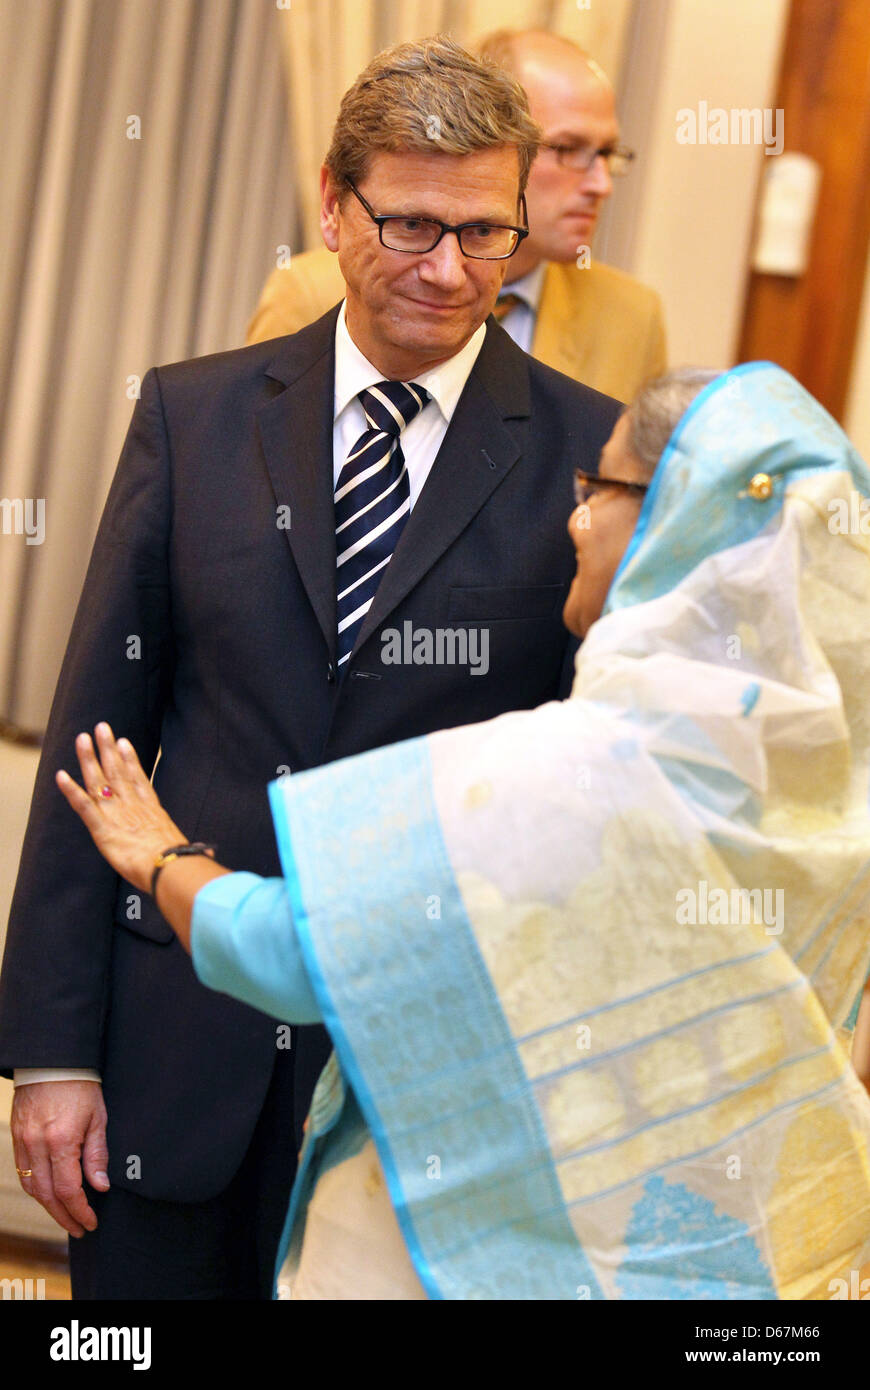 Premier Ministre du Bangladesh Sheikh Hasina reçoit le ministre des Affaires étrangères allemand Guido Westerwelle à Dhaka, Bangladesh, 23 juin 2012. Photo : JAN WOITAS Banque D'Images